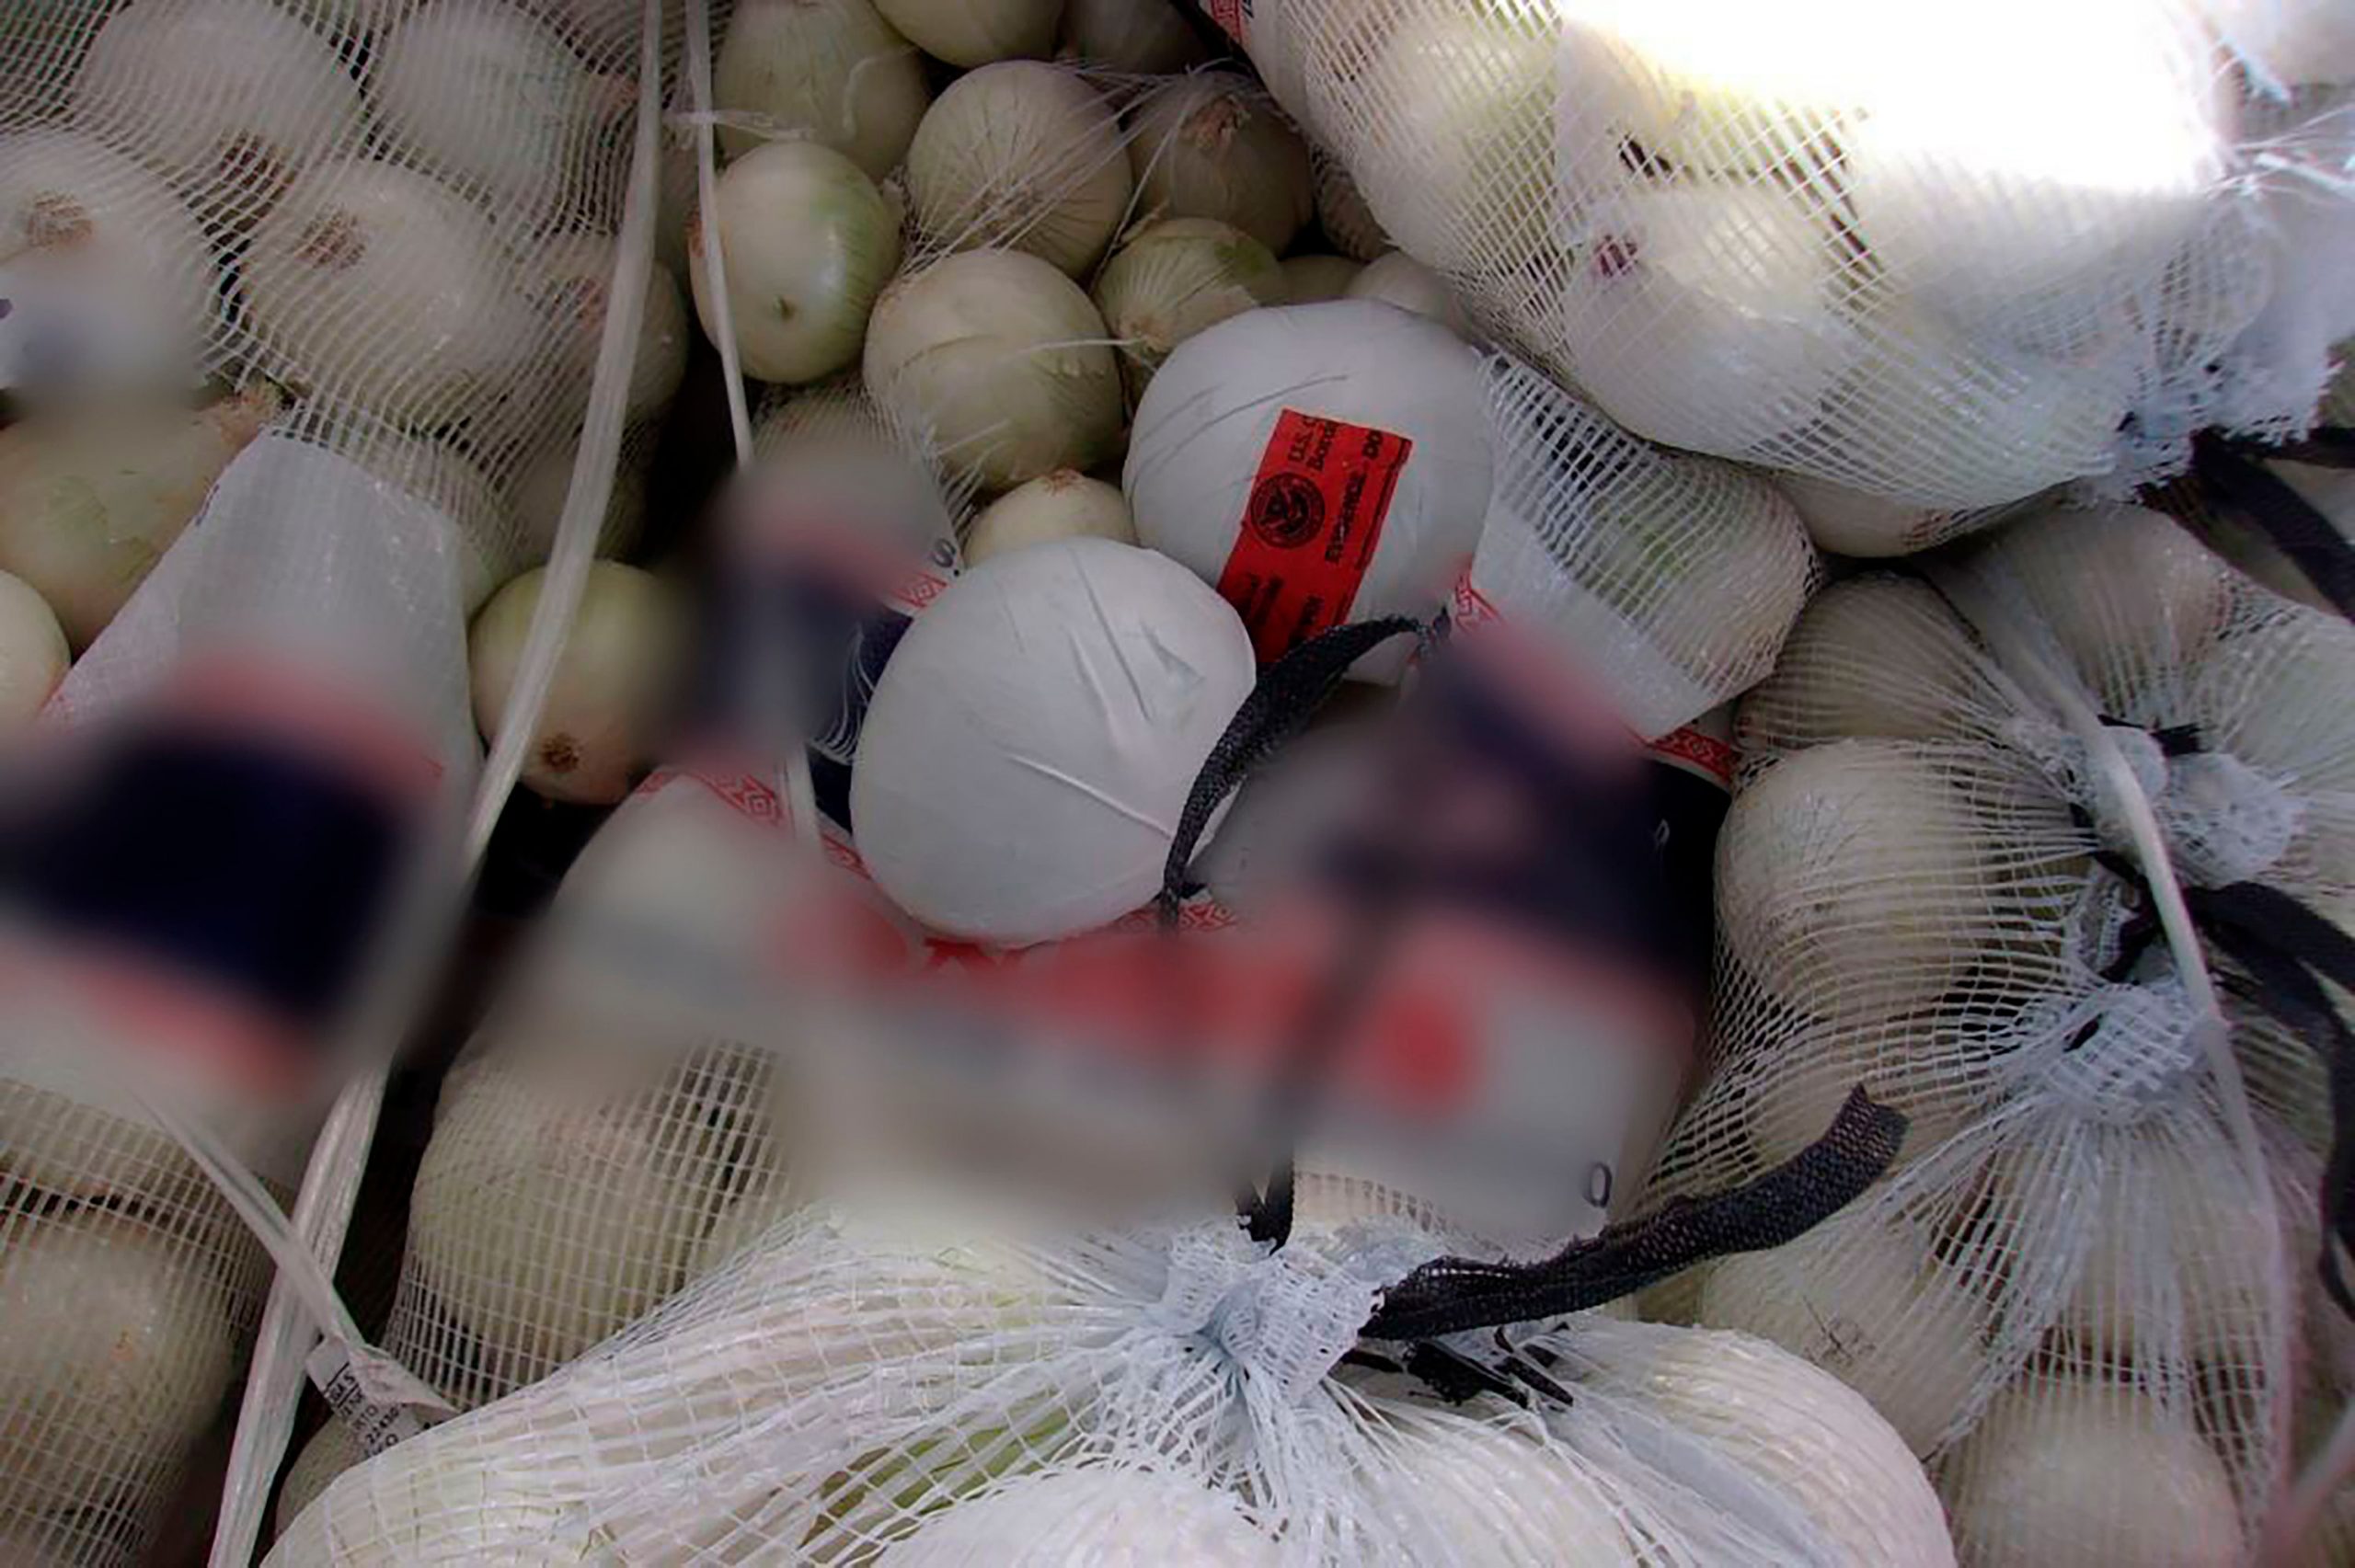 $3 million worth of meth in onion shipment seized